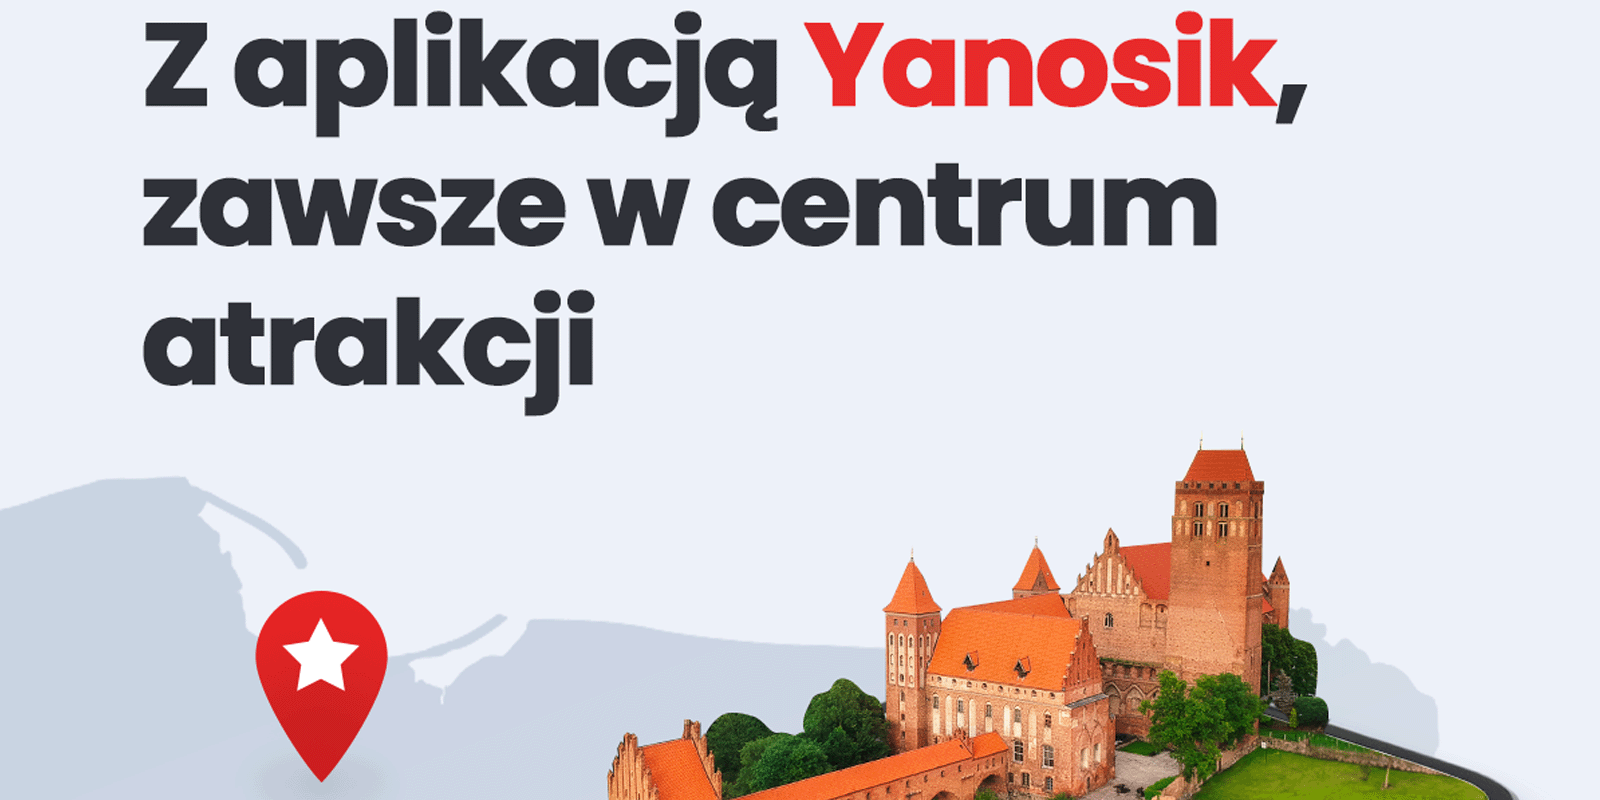 Odkryj Polskę z Yanosikiem - Nowa opcja turystyczna w popularnej aplikacji turystyka MEDIARUN COM YANOSIK TURYSTYKA V1